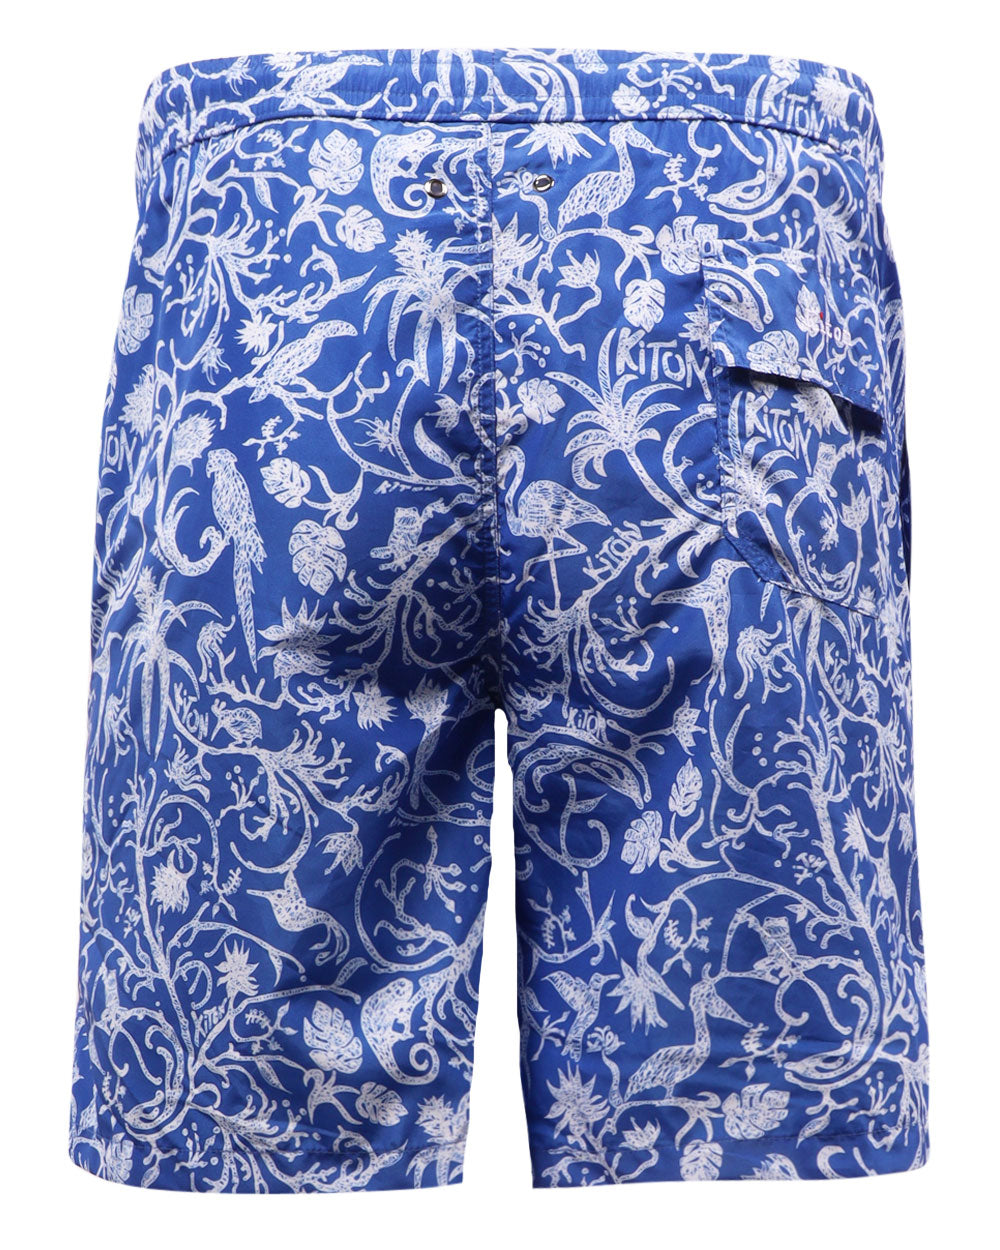 Blue and White Print Swim Shorts